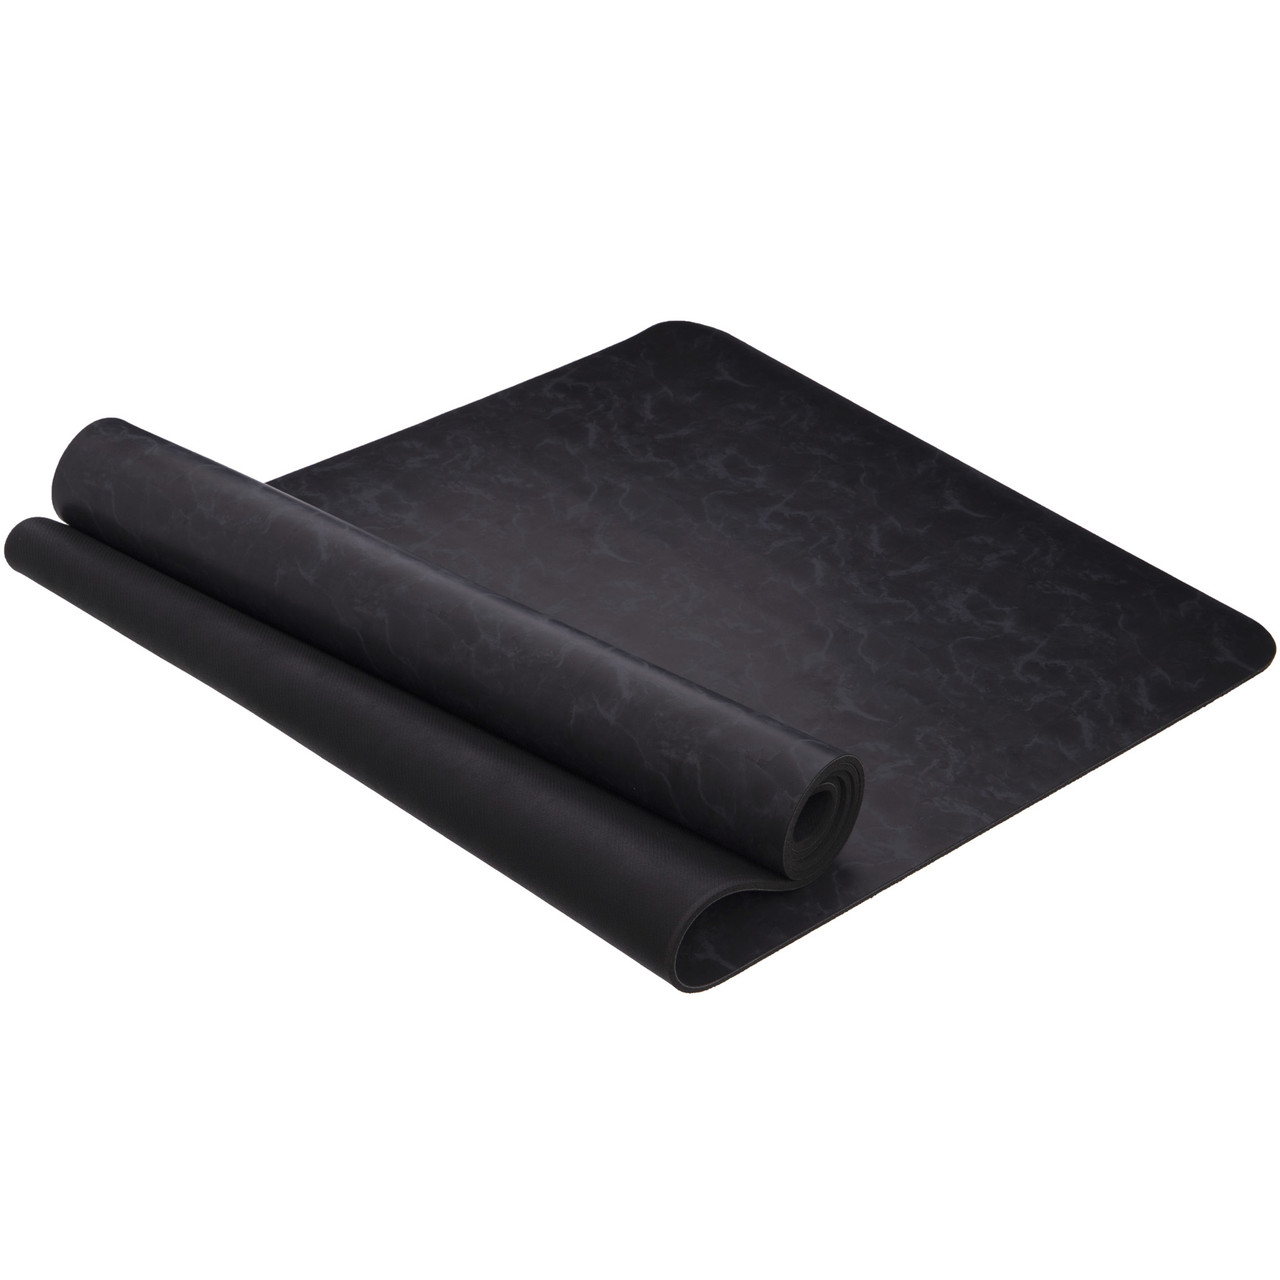 Килимок для йоги Record FI-8308-1 розмір 1,83 м x 0,68 м x 6мм чорний